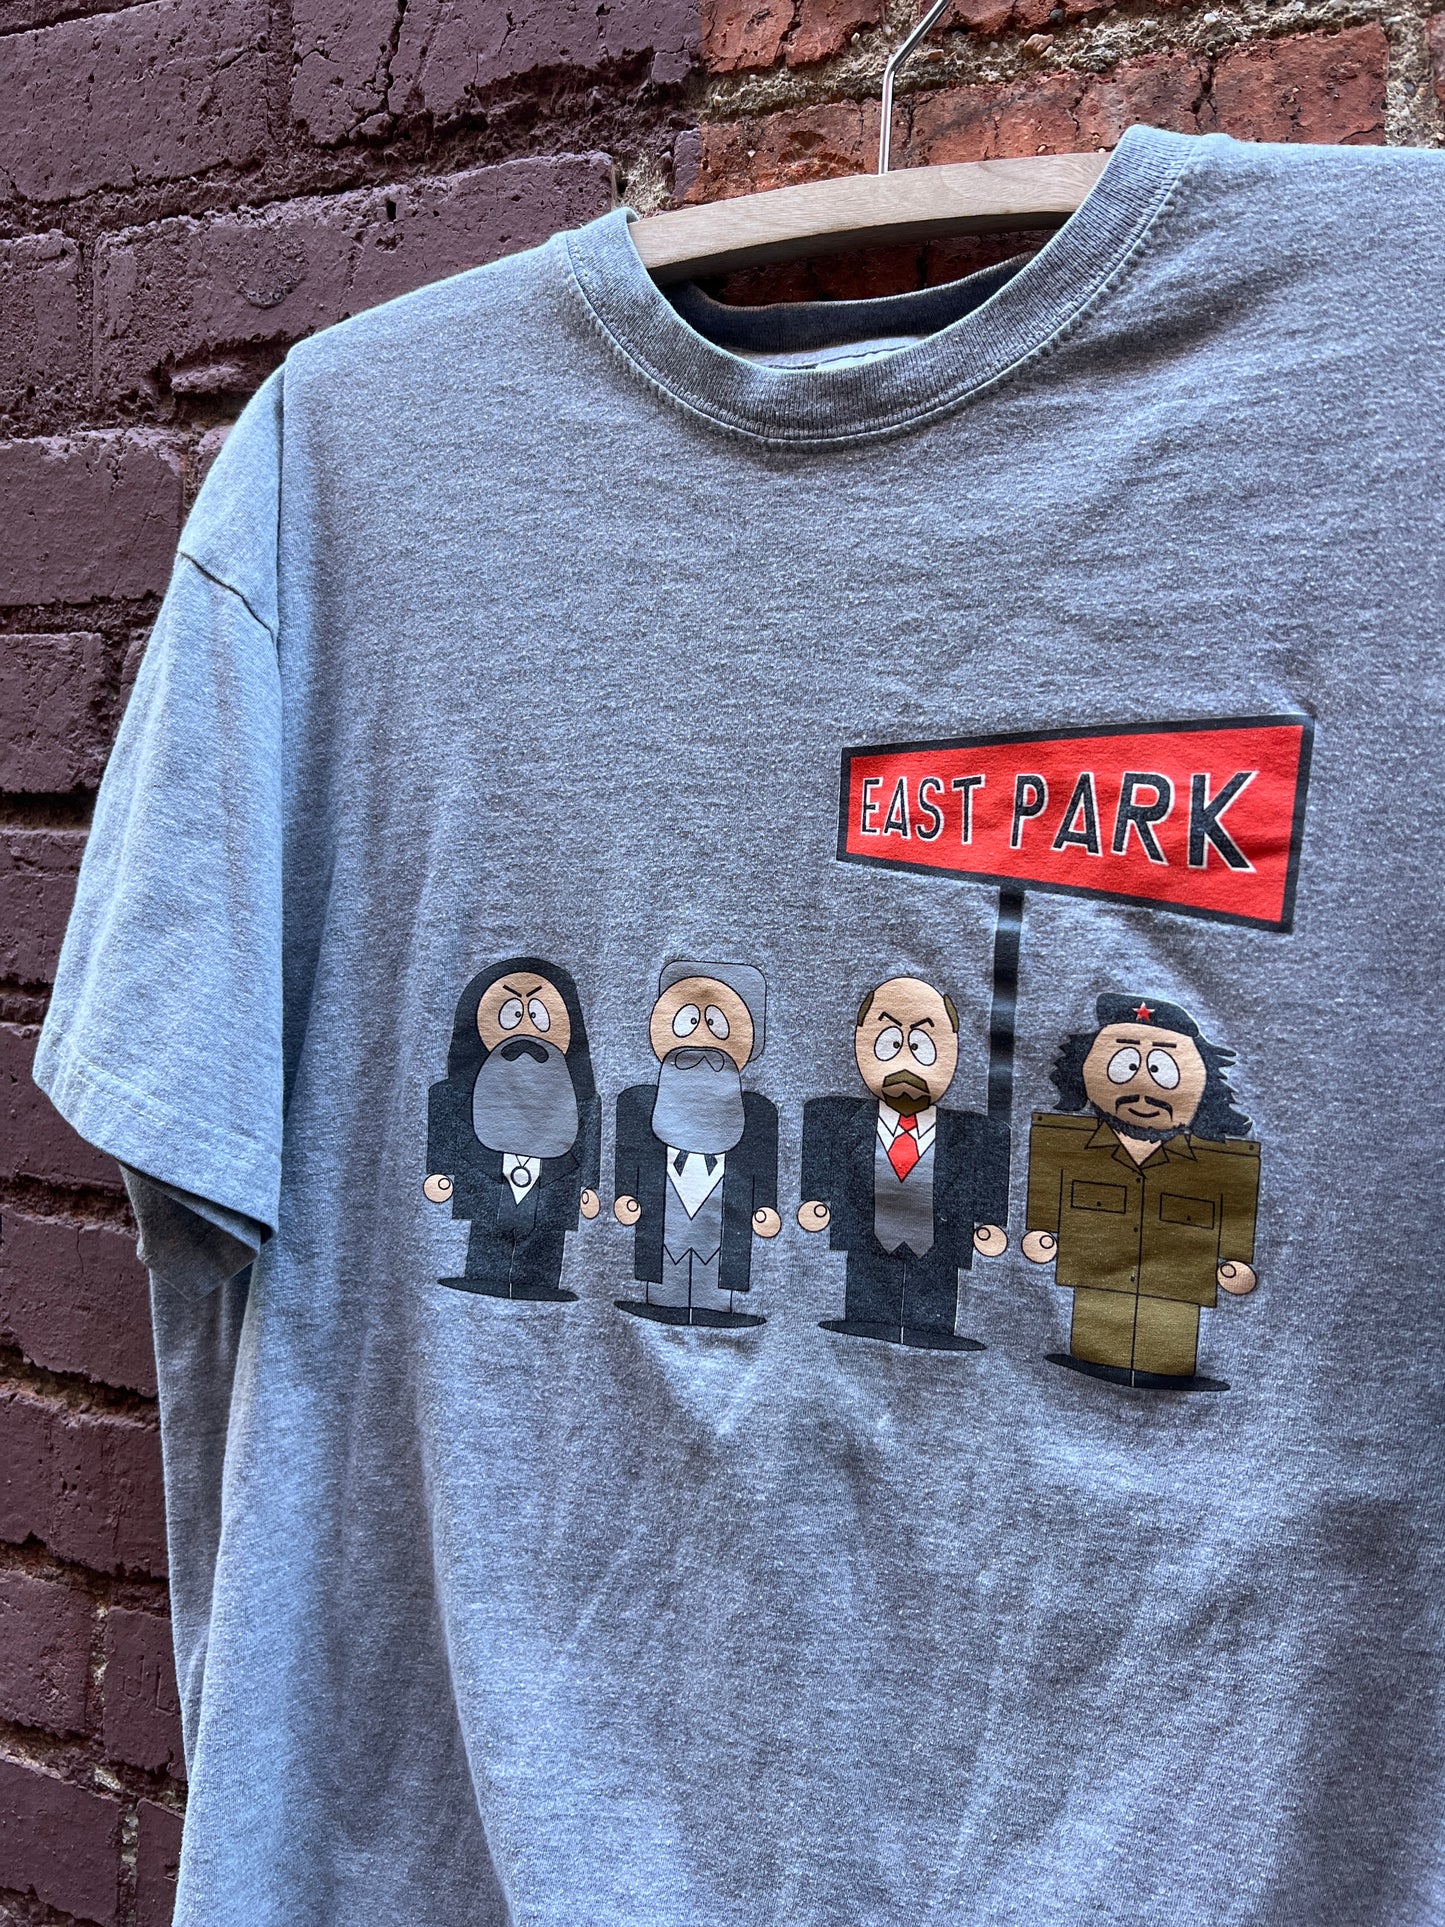 1990s South Park parody shirt - Sz Large - East Park Commie Leaders comedy shirt